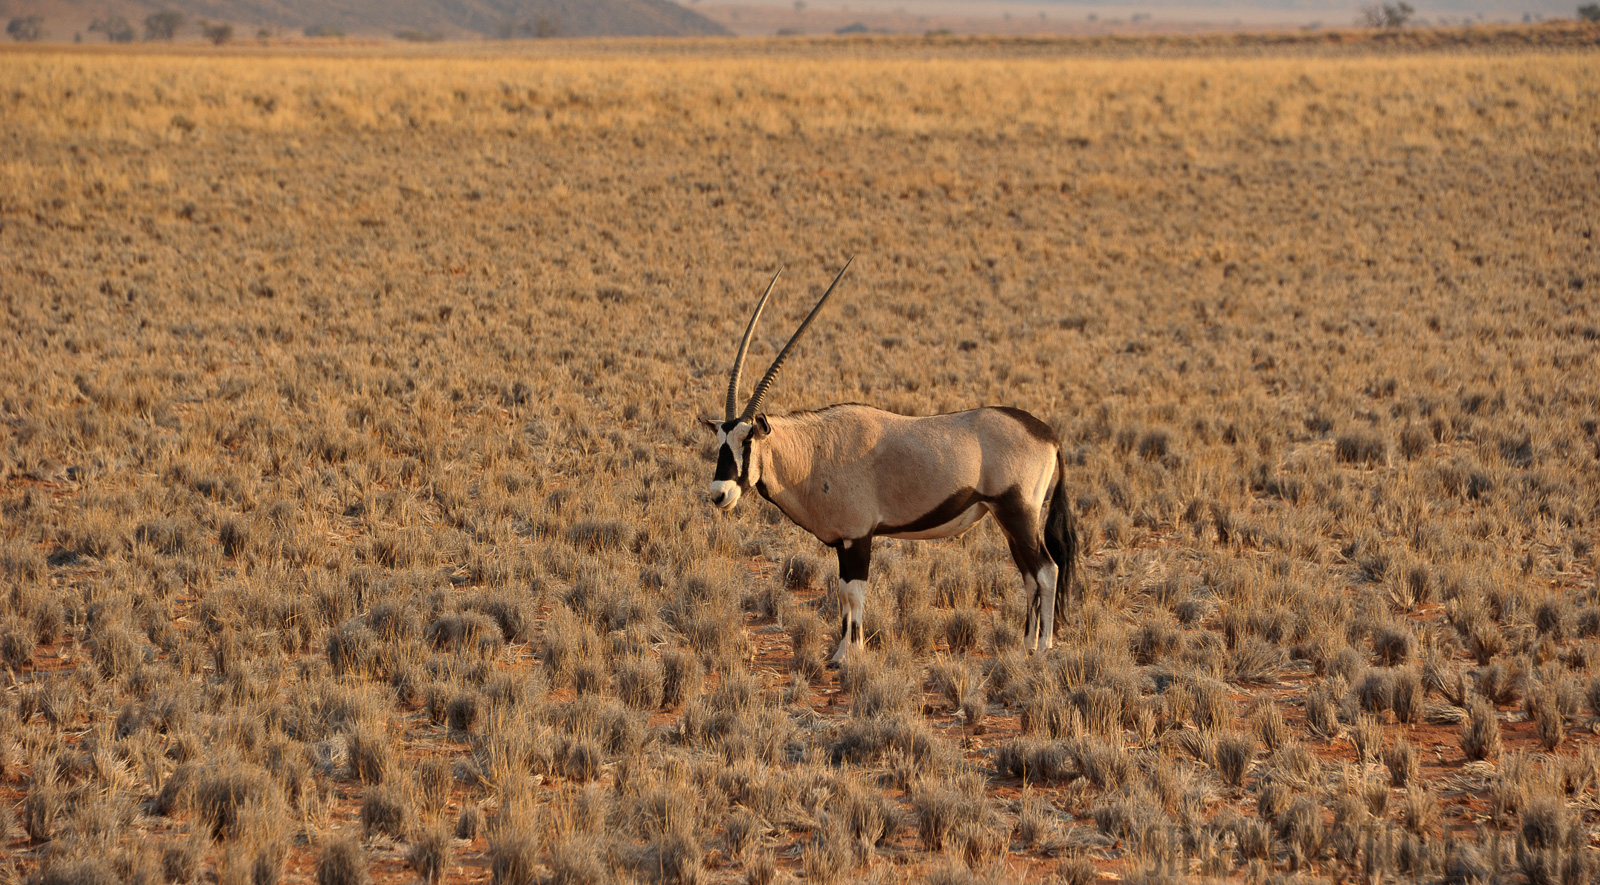 Oryx gazella [210 mm, 1/400 sec at f / 7.1, ISO 400]